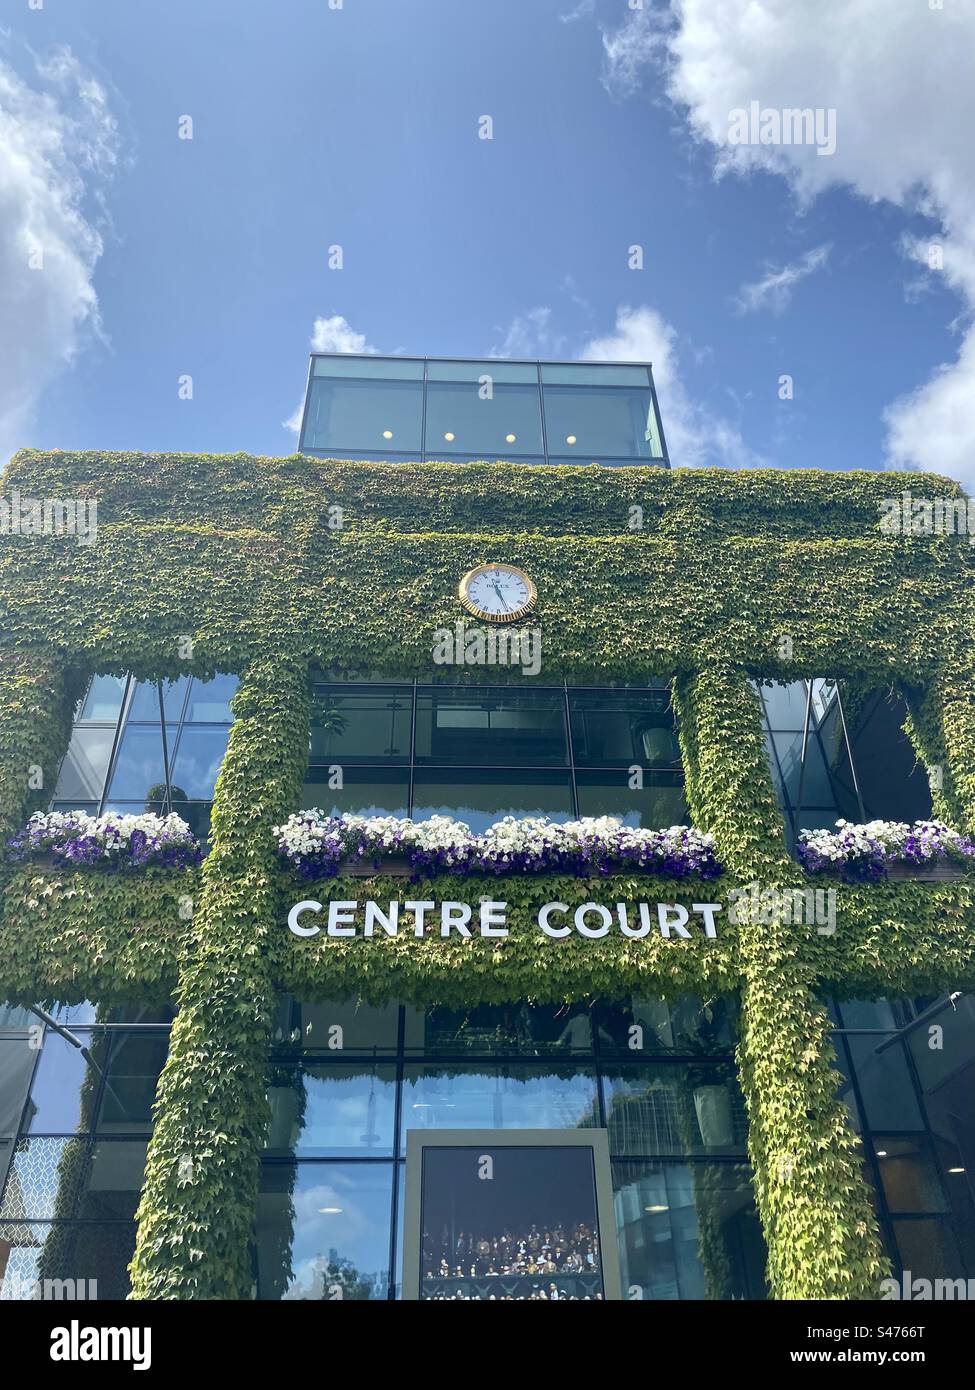 The exterior facade of Centre Court, Wimbledon Stock Photo